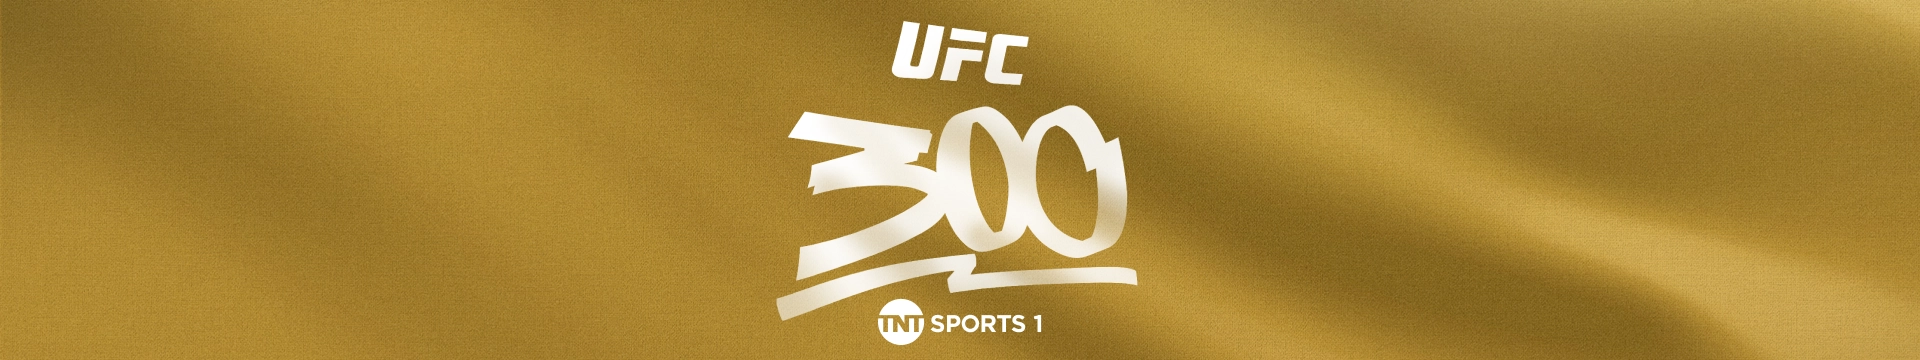 UFC 300: Pereira v Hill